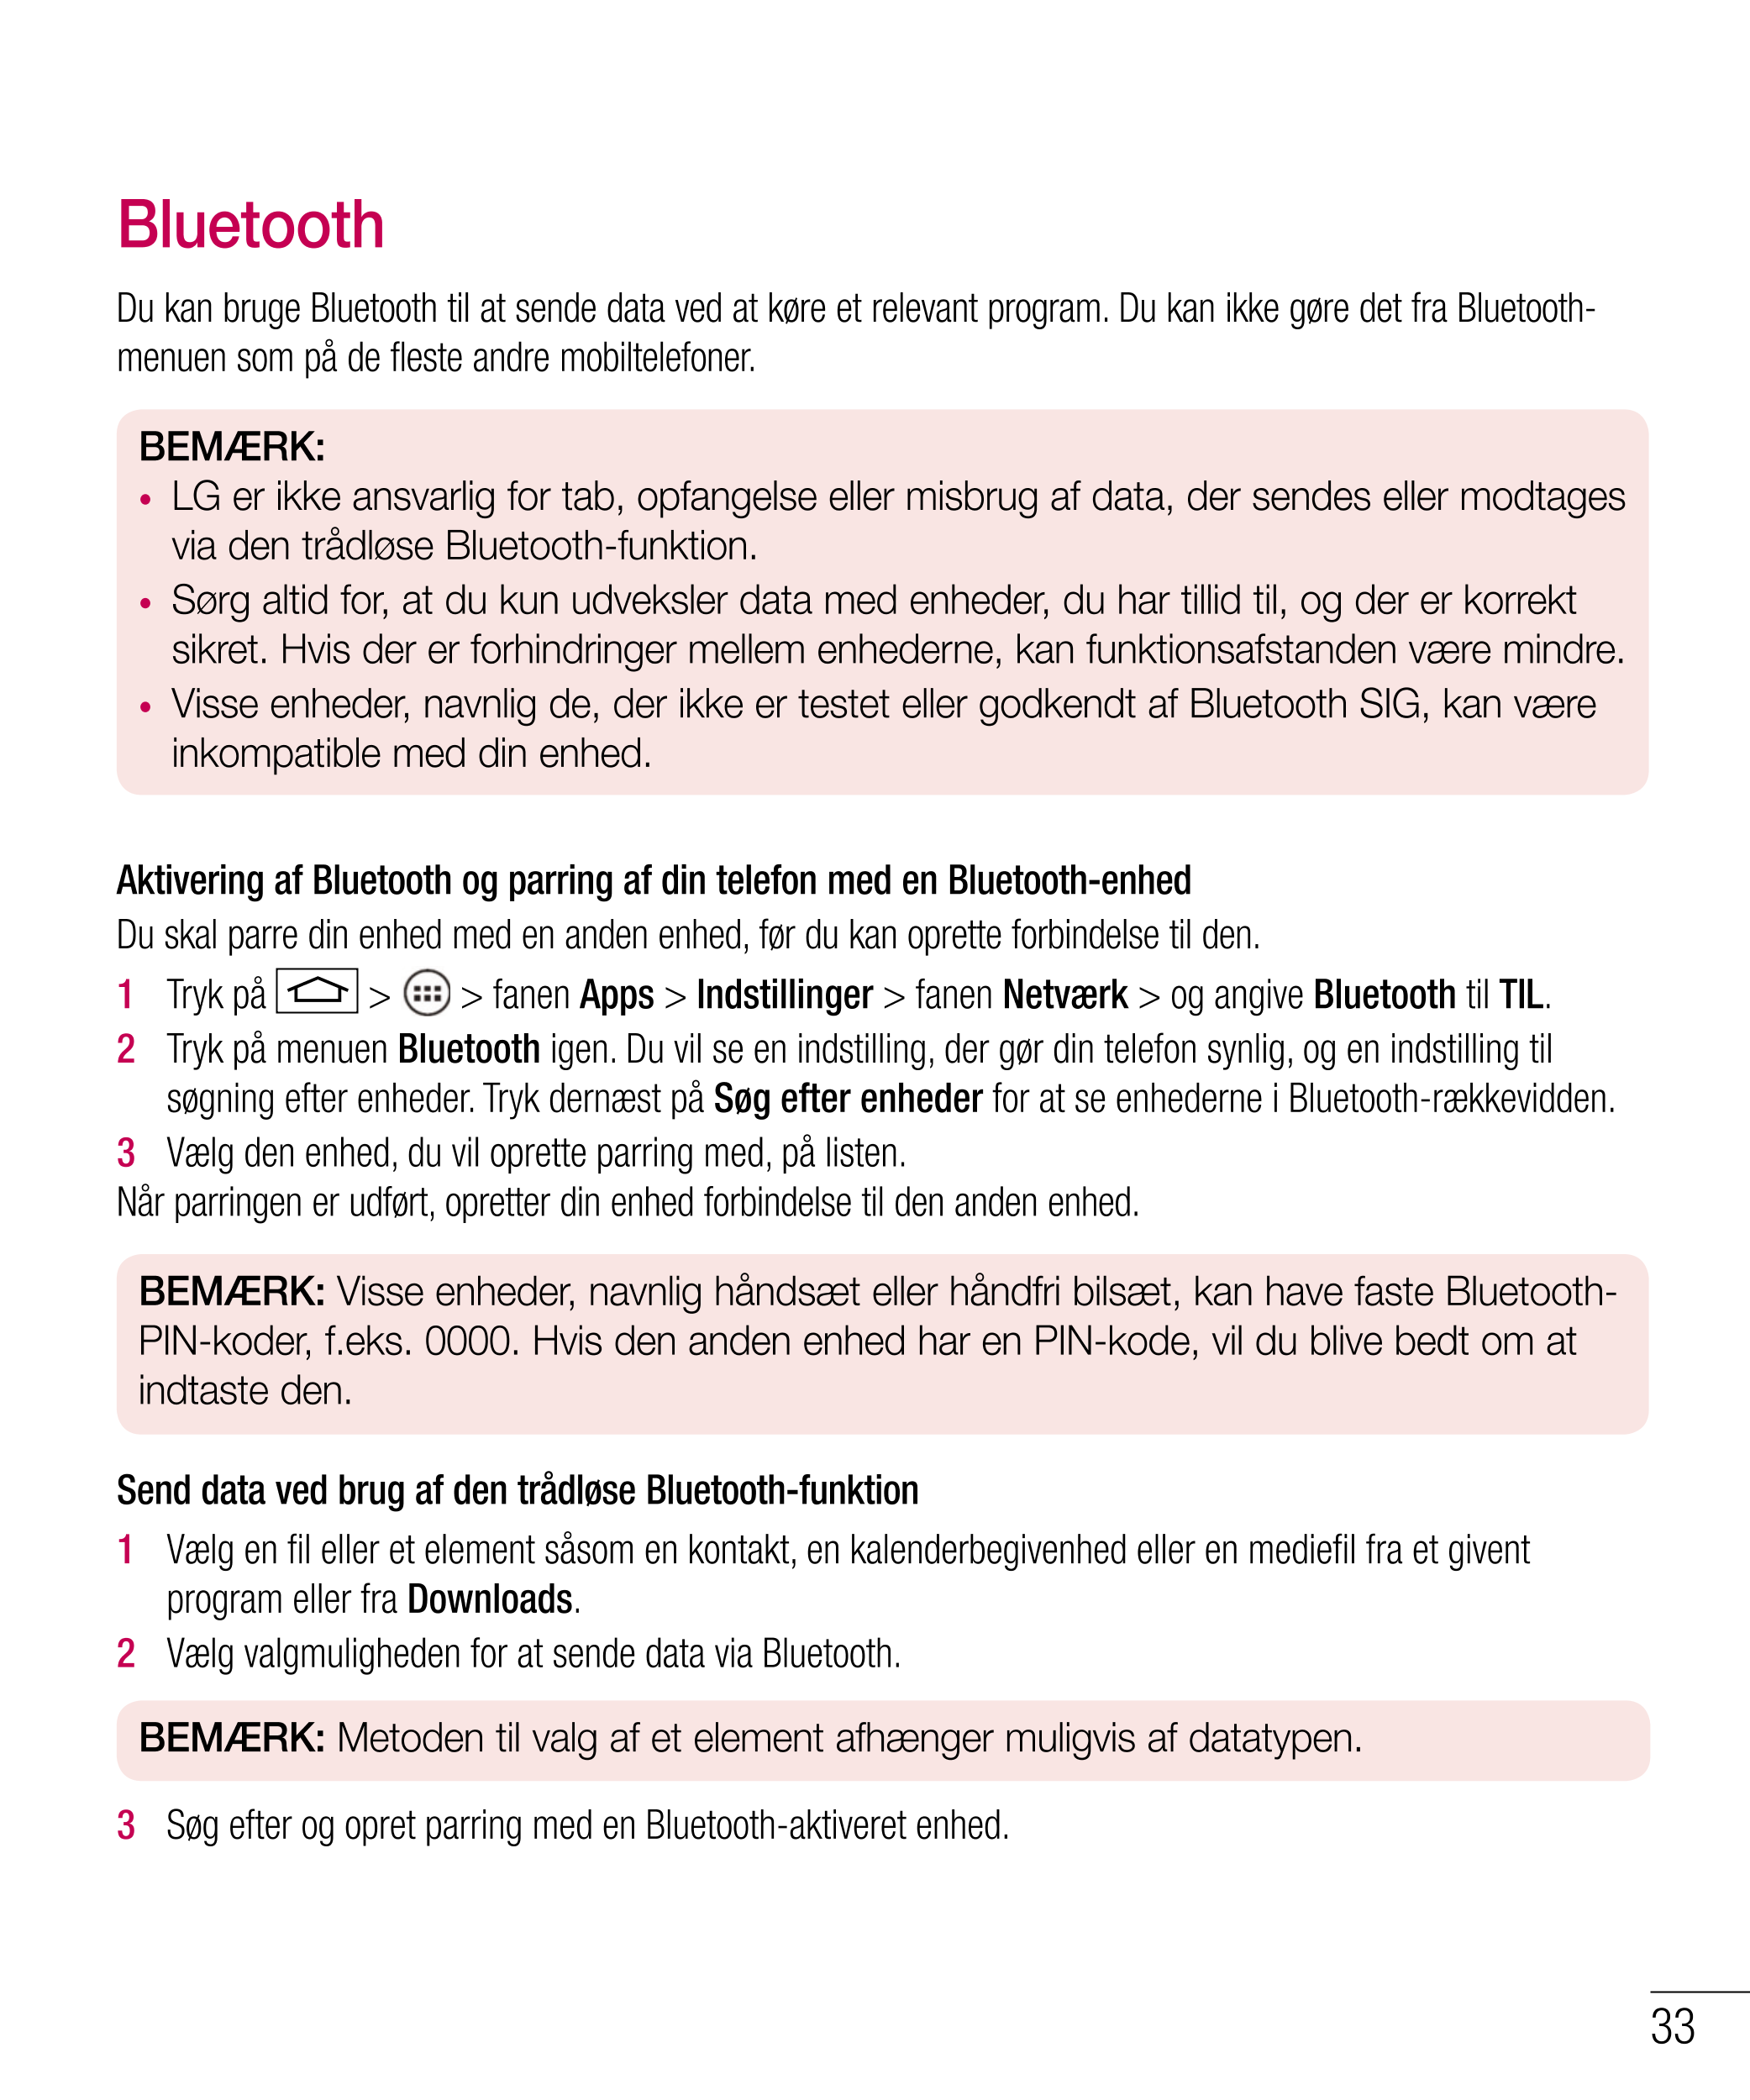 Bluetooth
Du kan bruge Bluetooth til at sende data ved at køre et relevant program. Du kan ikke gøre det fra Bluetooth-
menuen s